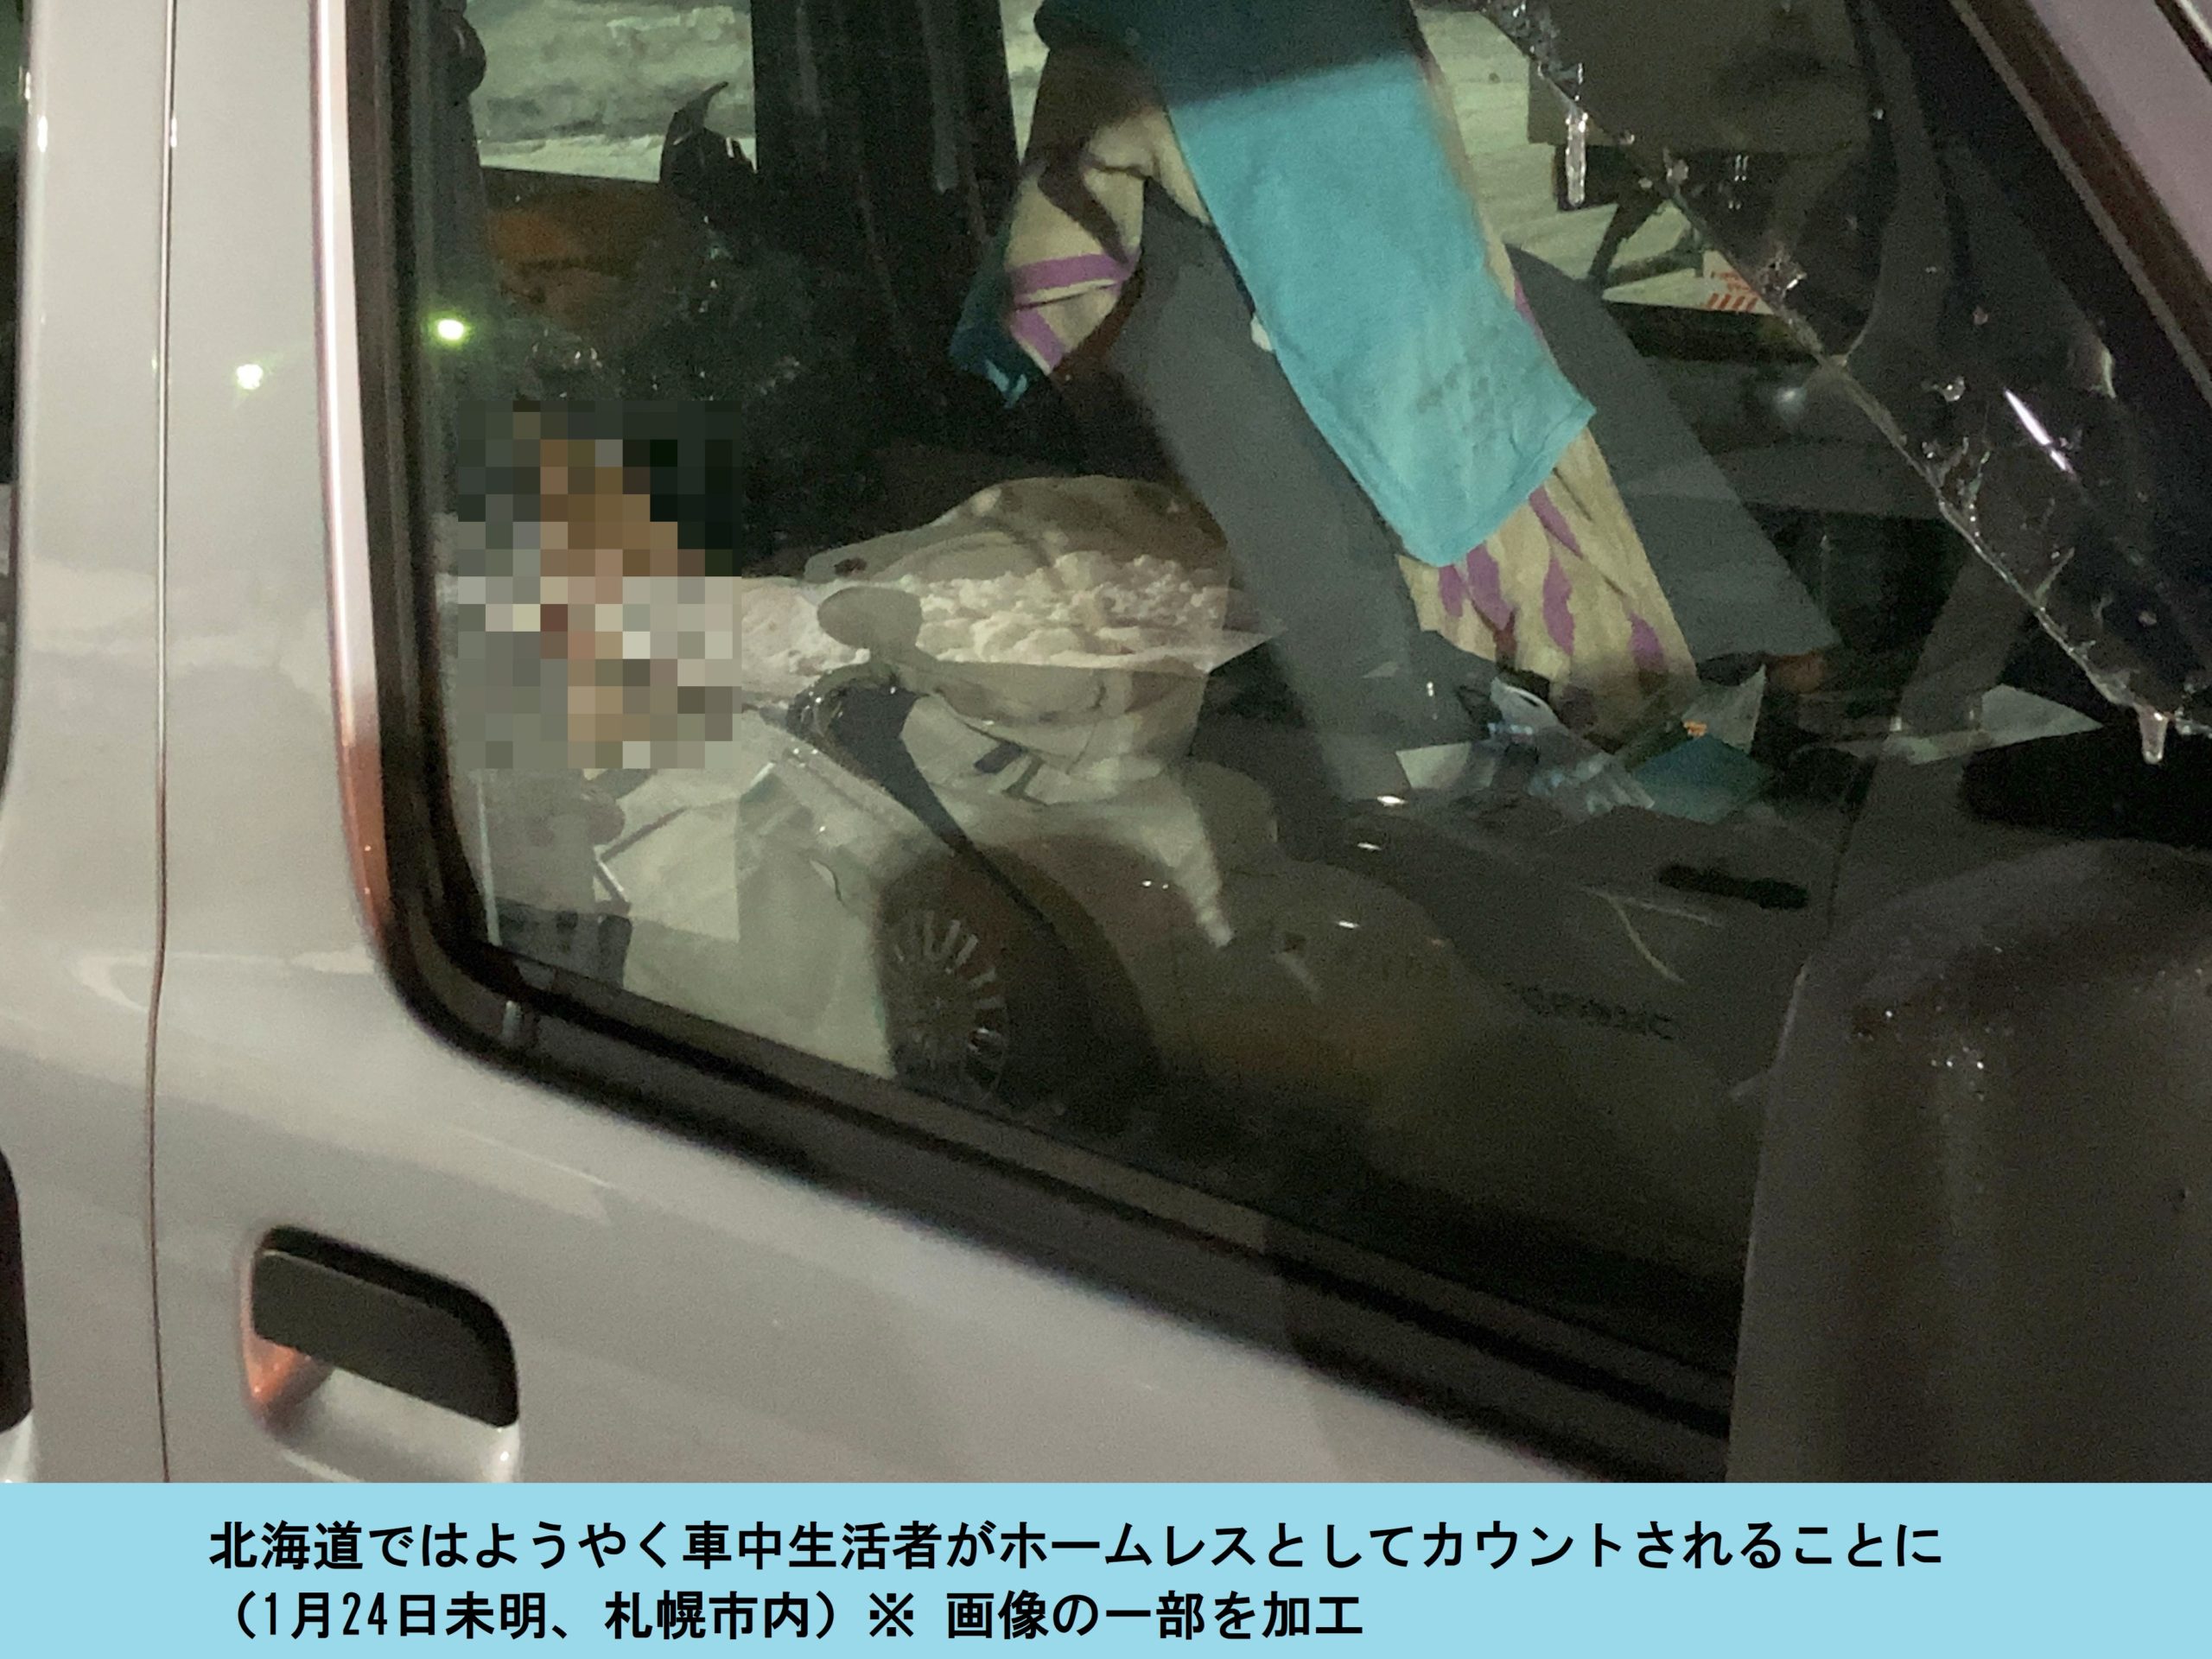 厳寒の札幌で路上生活者調査 郊外の 車中泊 初めて調査対象に Hunter ハンター